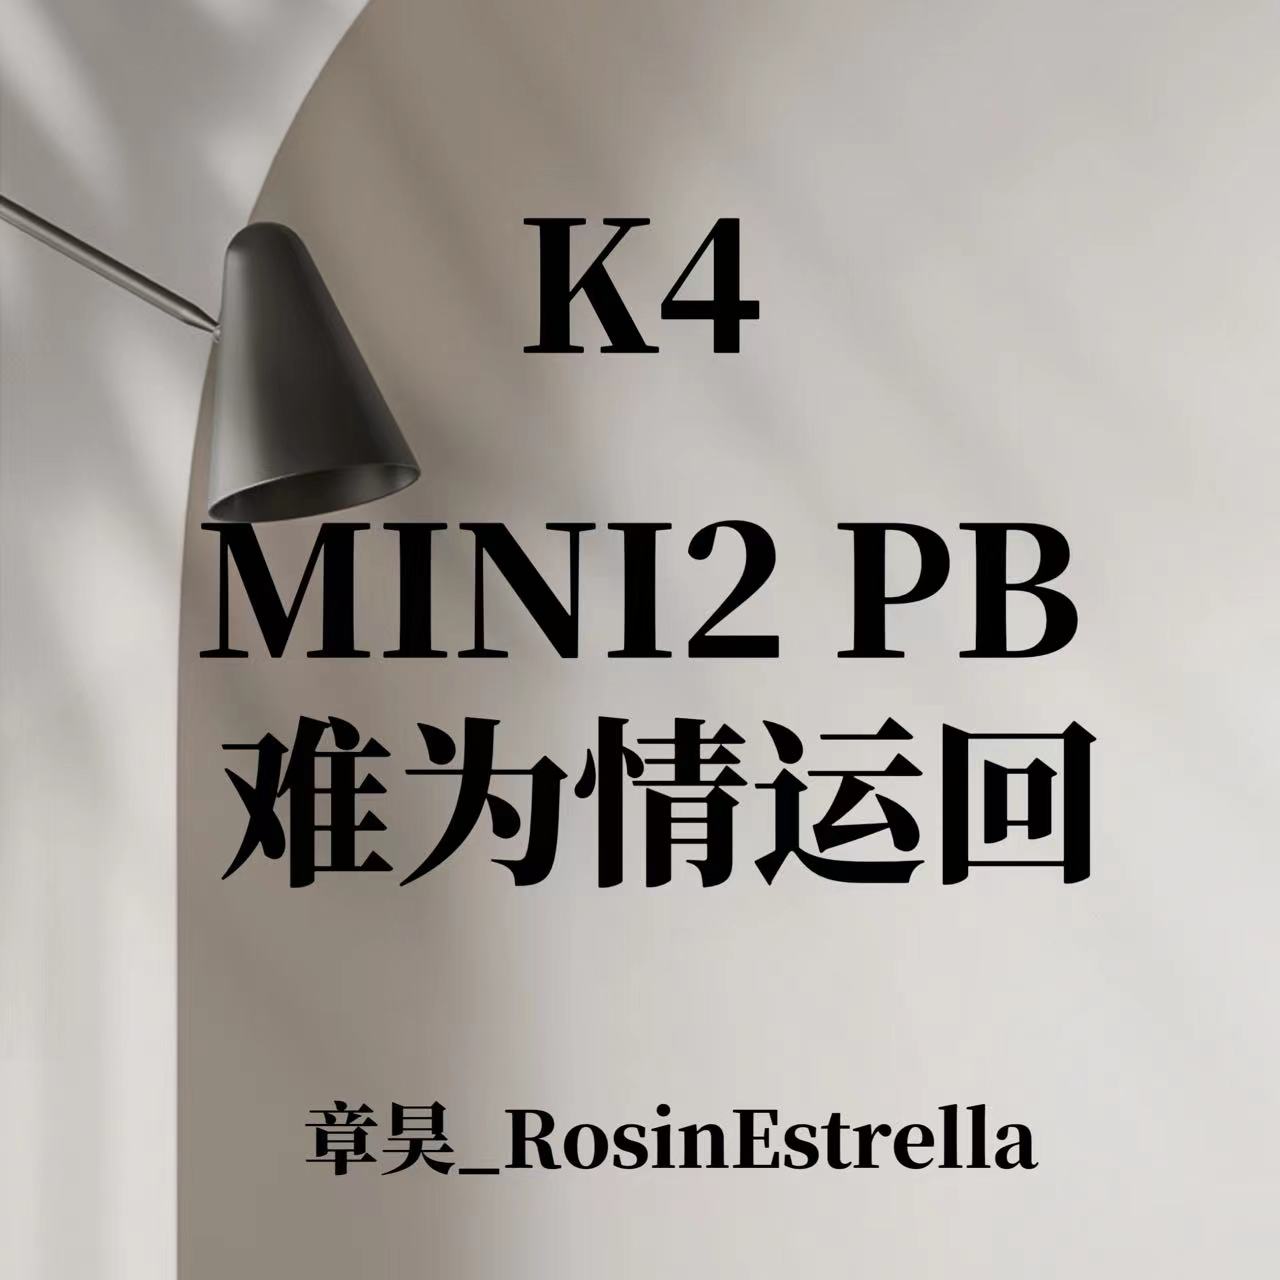 [全款 裸专][Ktown4u Special Gift] [3CD SET] ZEROBASEONE - The 2nd Mini Album [MELTING POINT] (Fairytale ver. + Mystery ver. + Loyalty ver.)